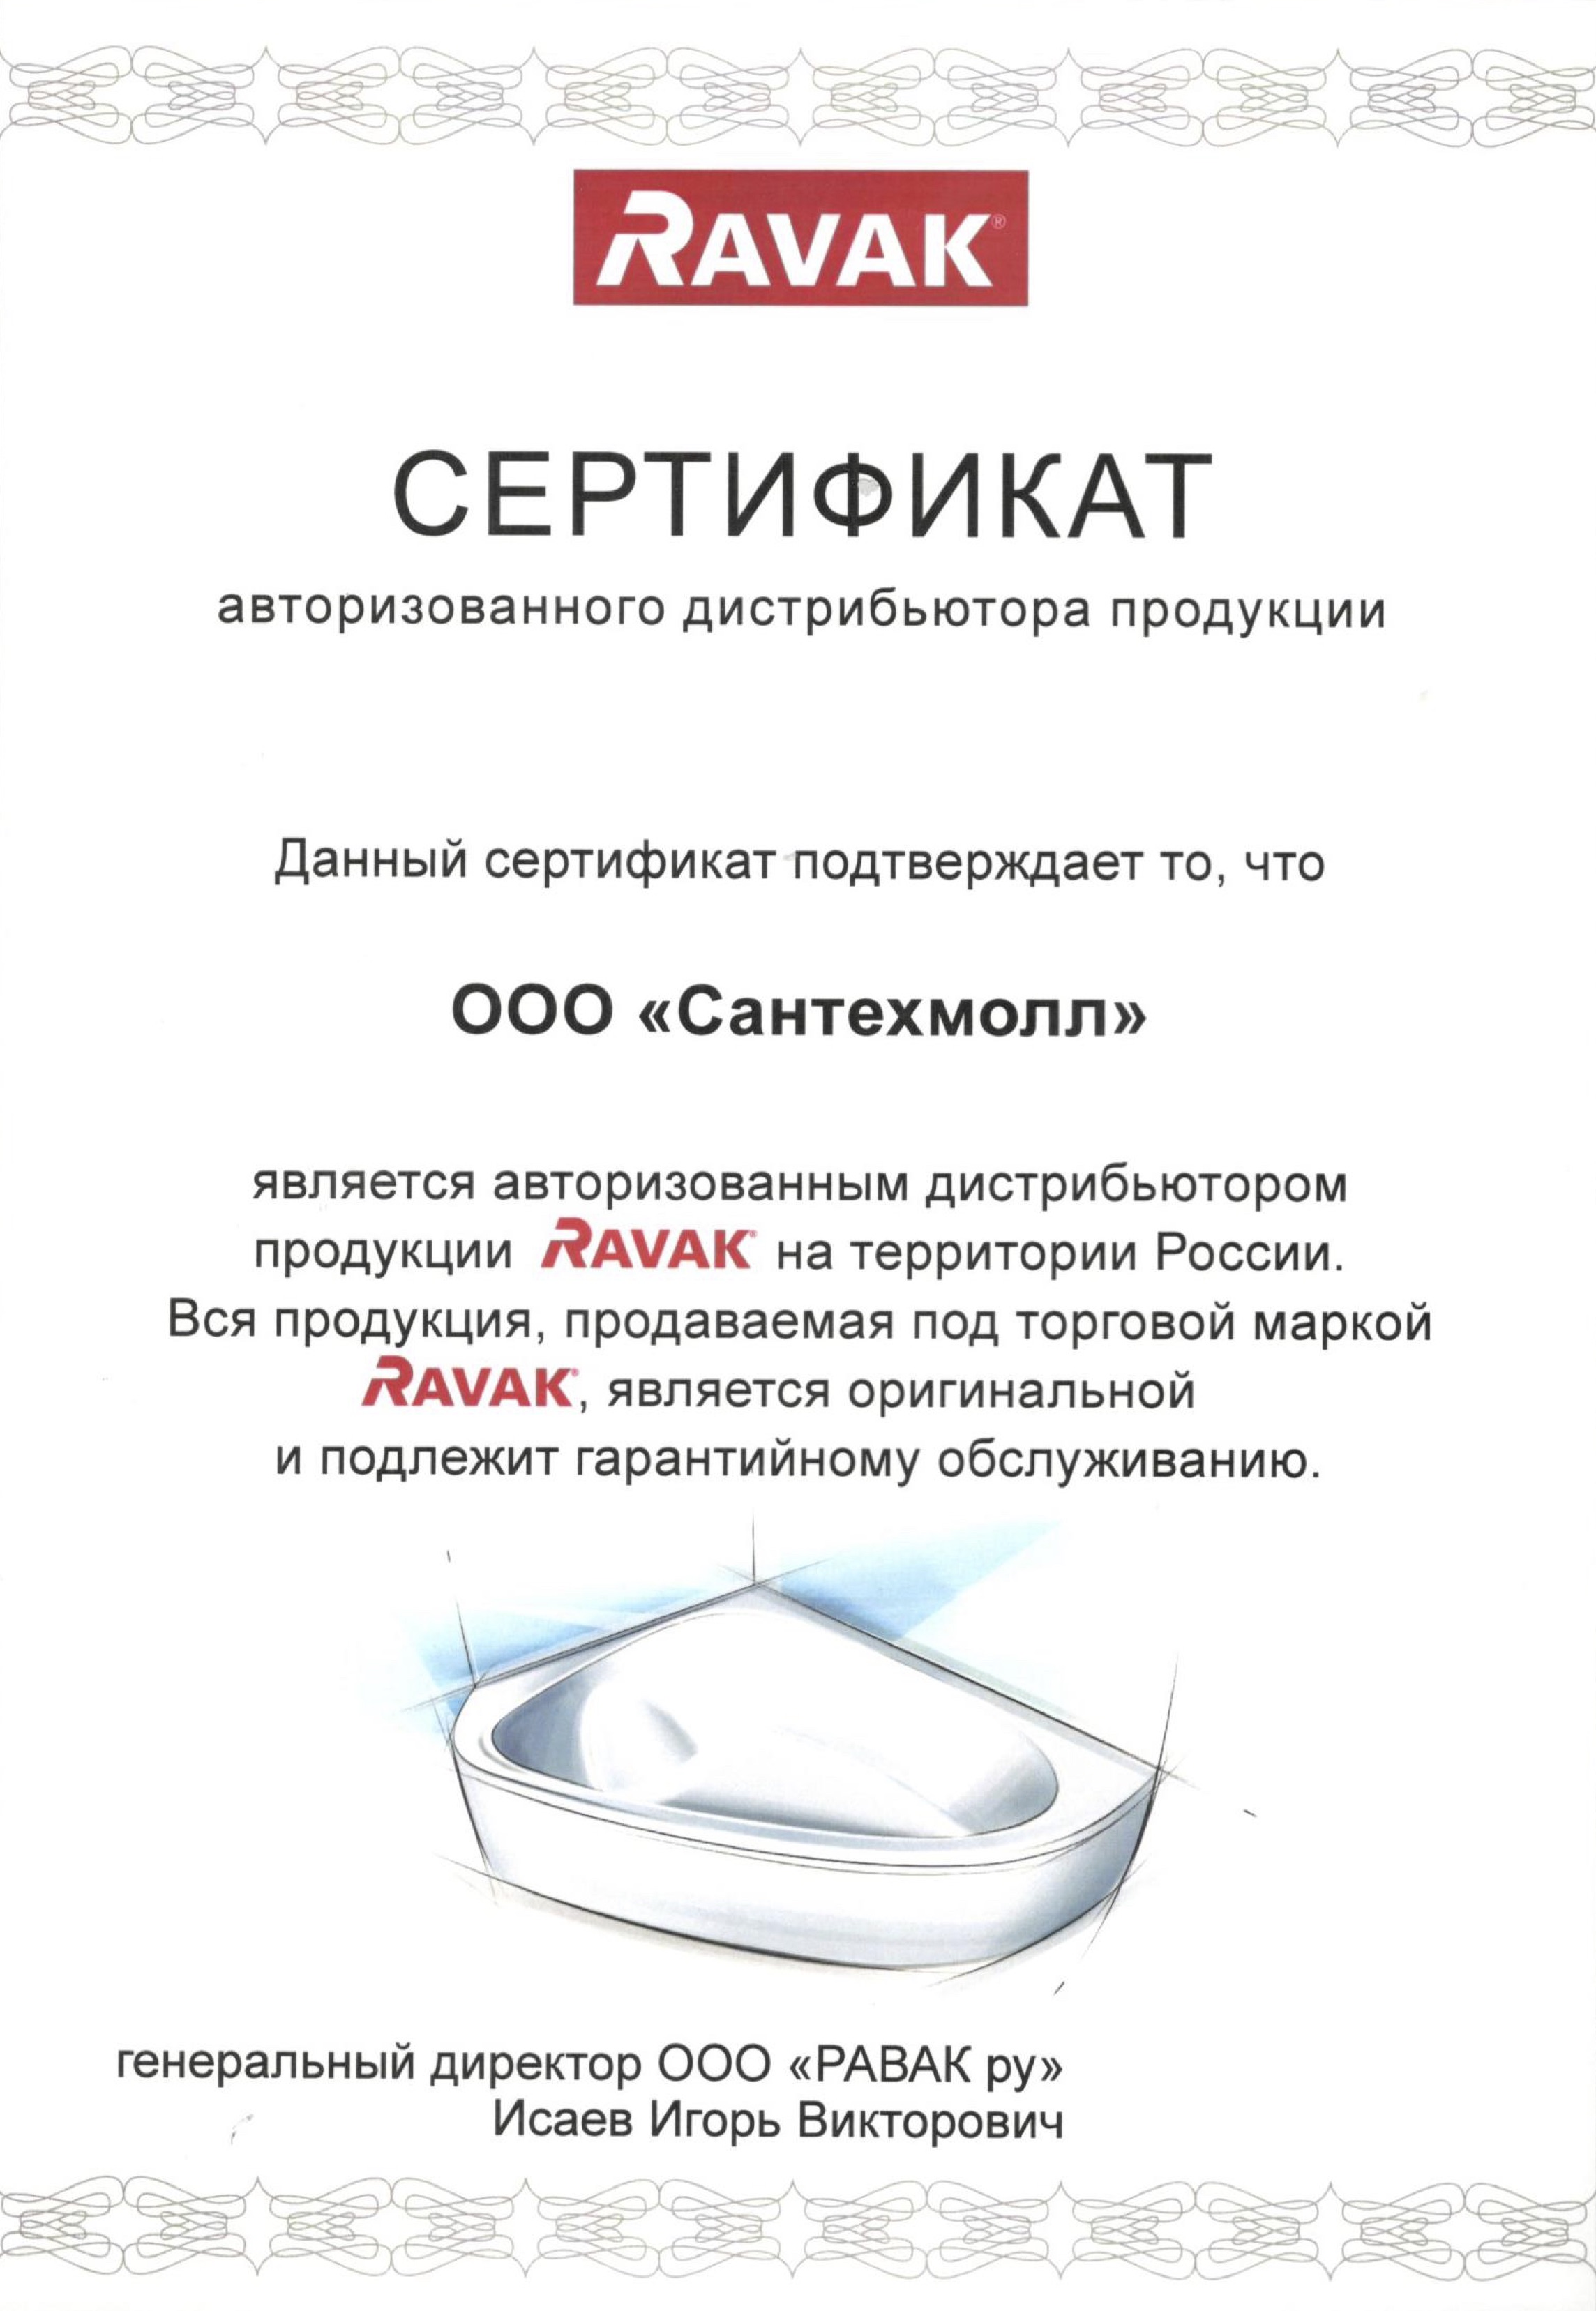 Сантехмолл интернет. Сертификат на Ravak. Ravak сантехника. Ravak логотип сантехника. «Равак рус».